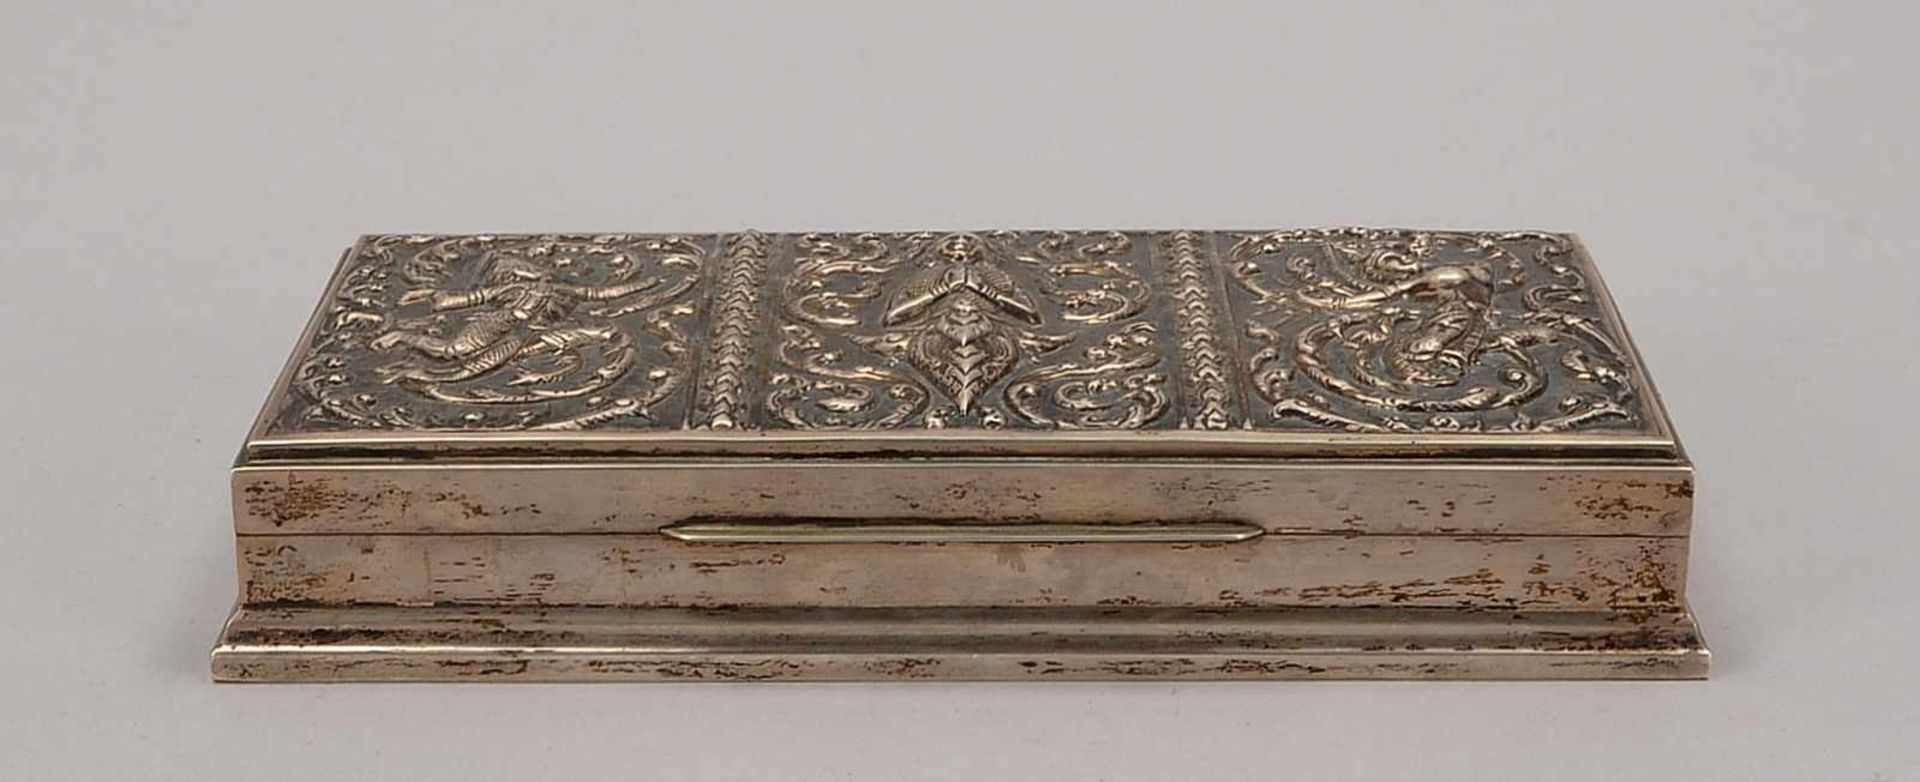 Silberkästrchen, Asien, 925 Sterling-Silber (punziert), mit Holz-Innenausstattung; Maße 21 x 11 x